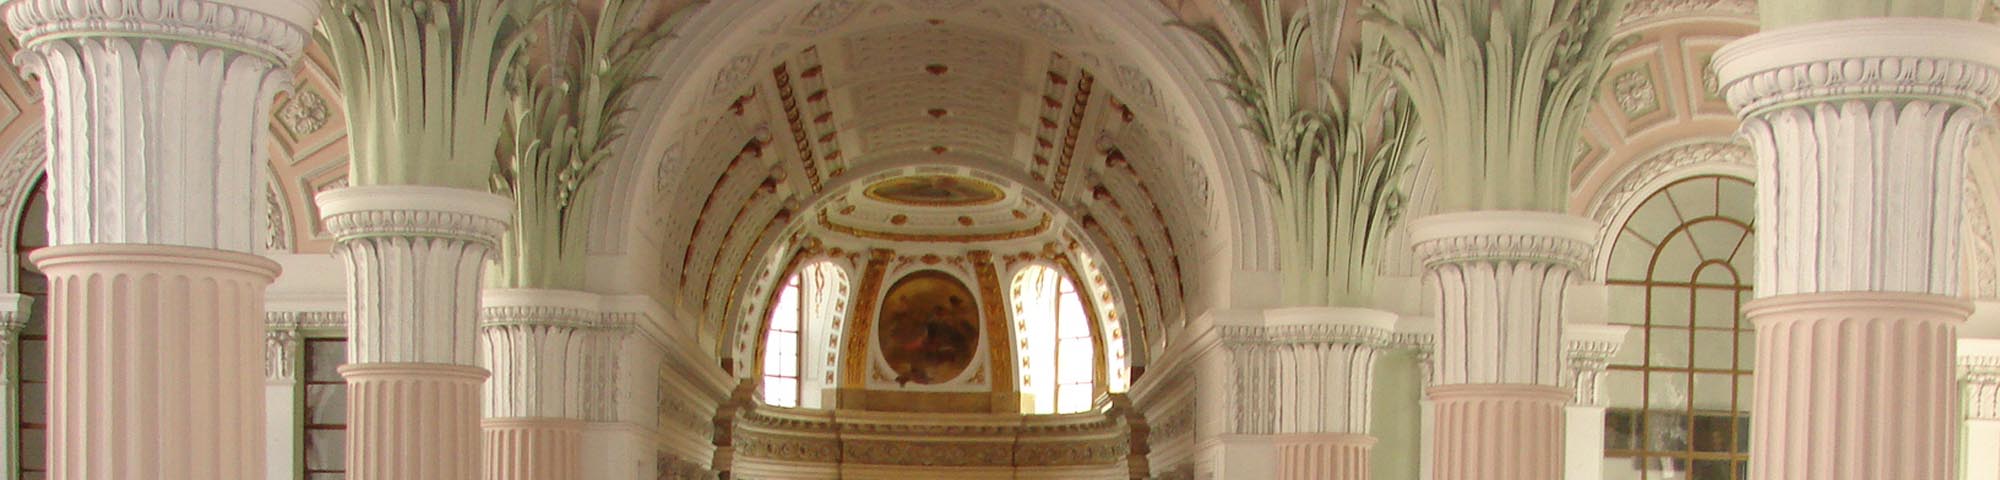 Gewölbedecke der Nikolaikirche Leipzig